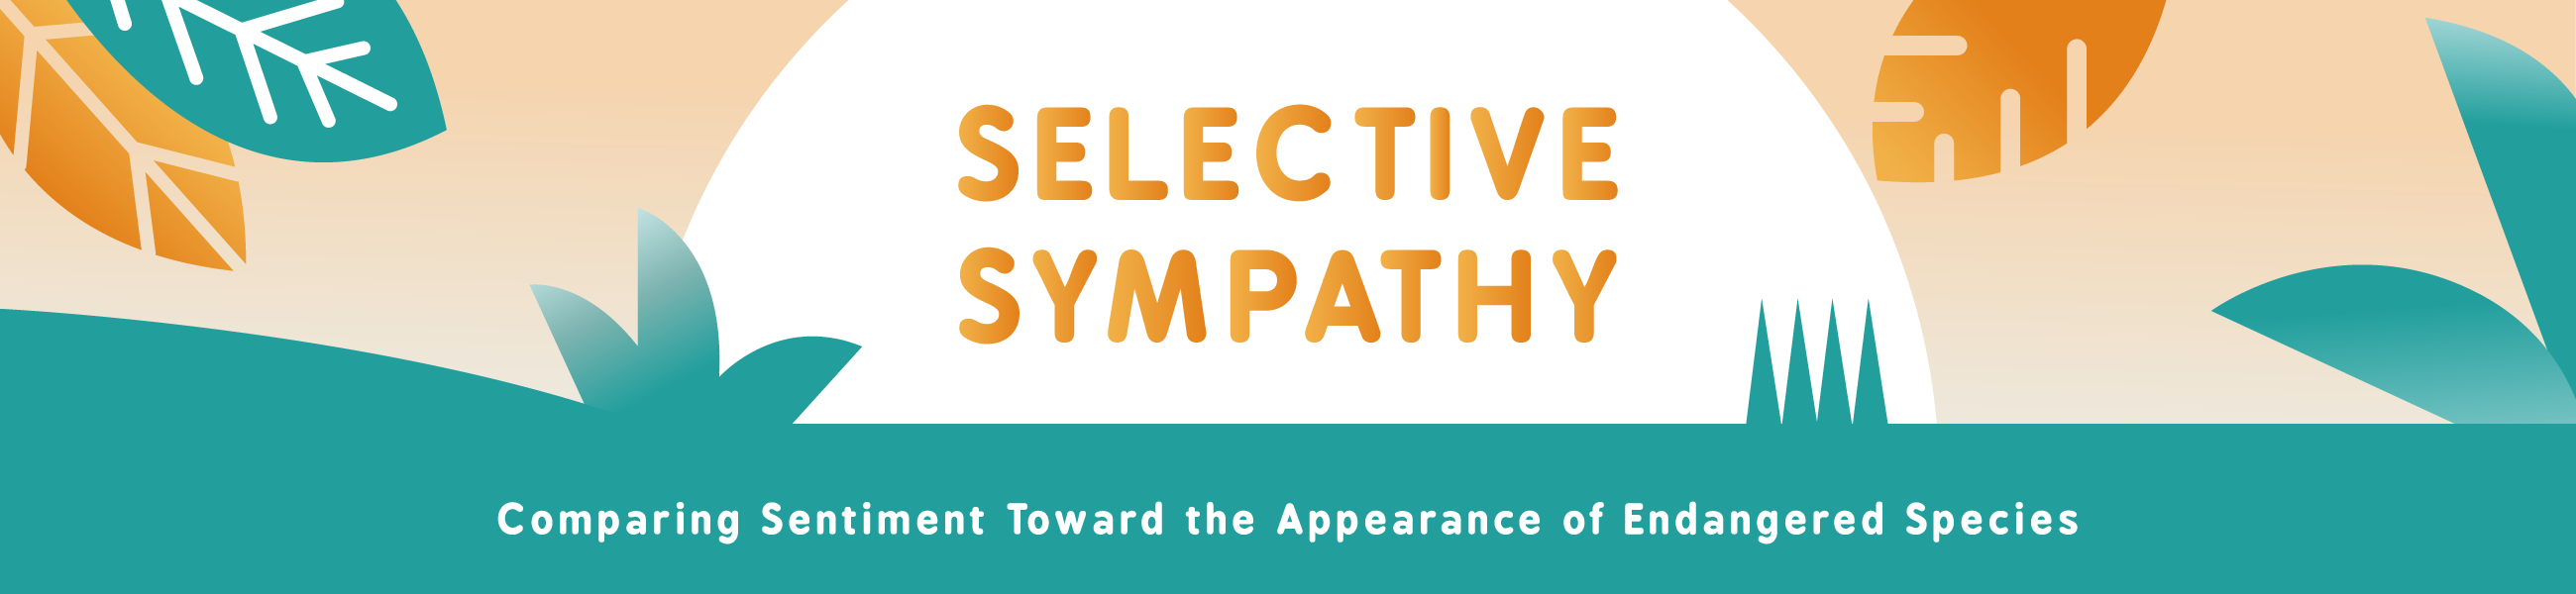 Selective Sympathy